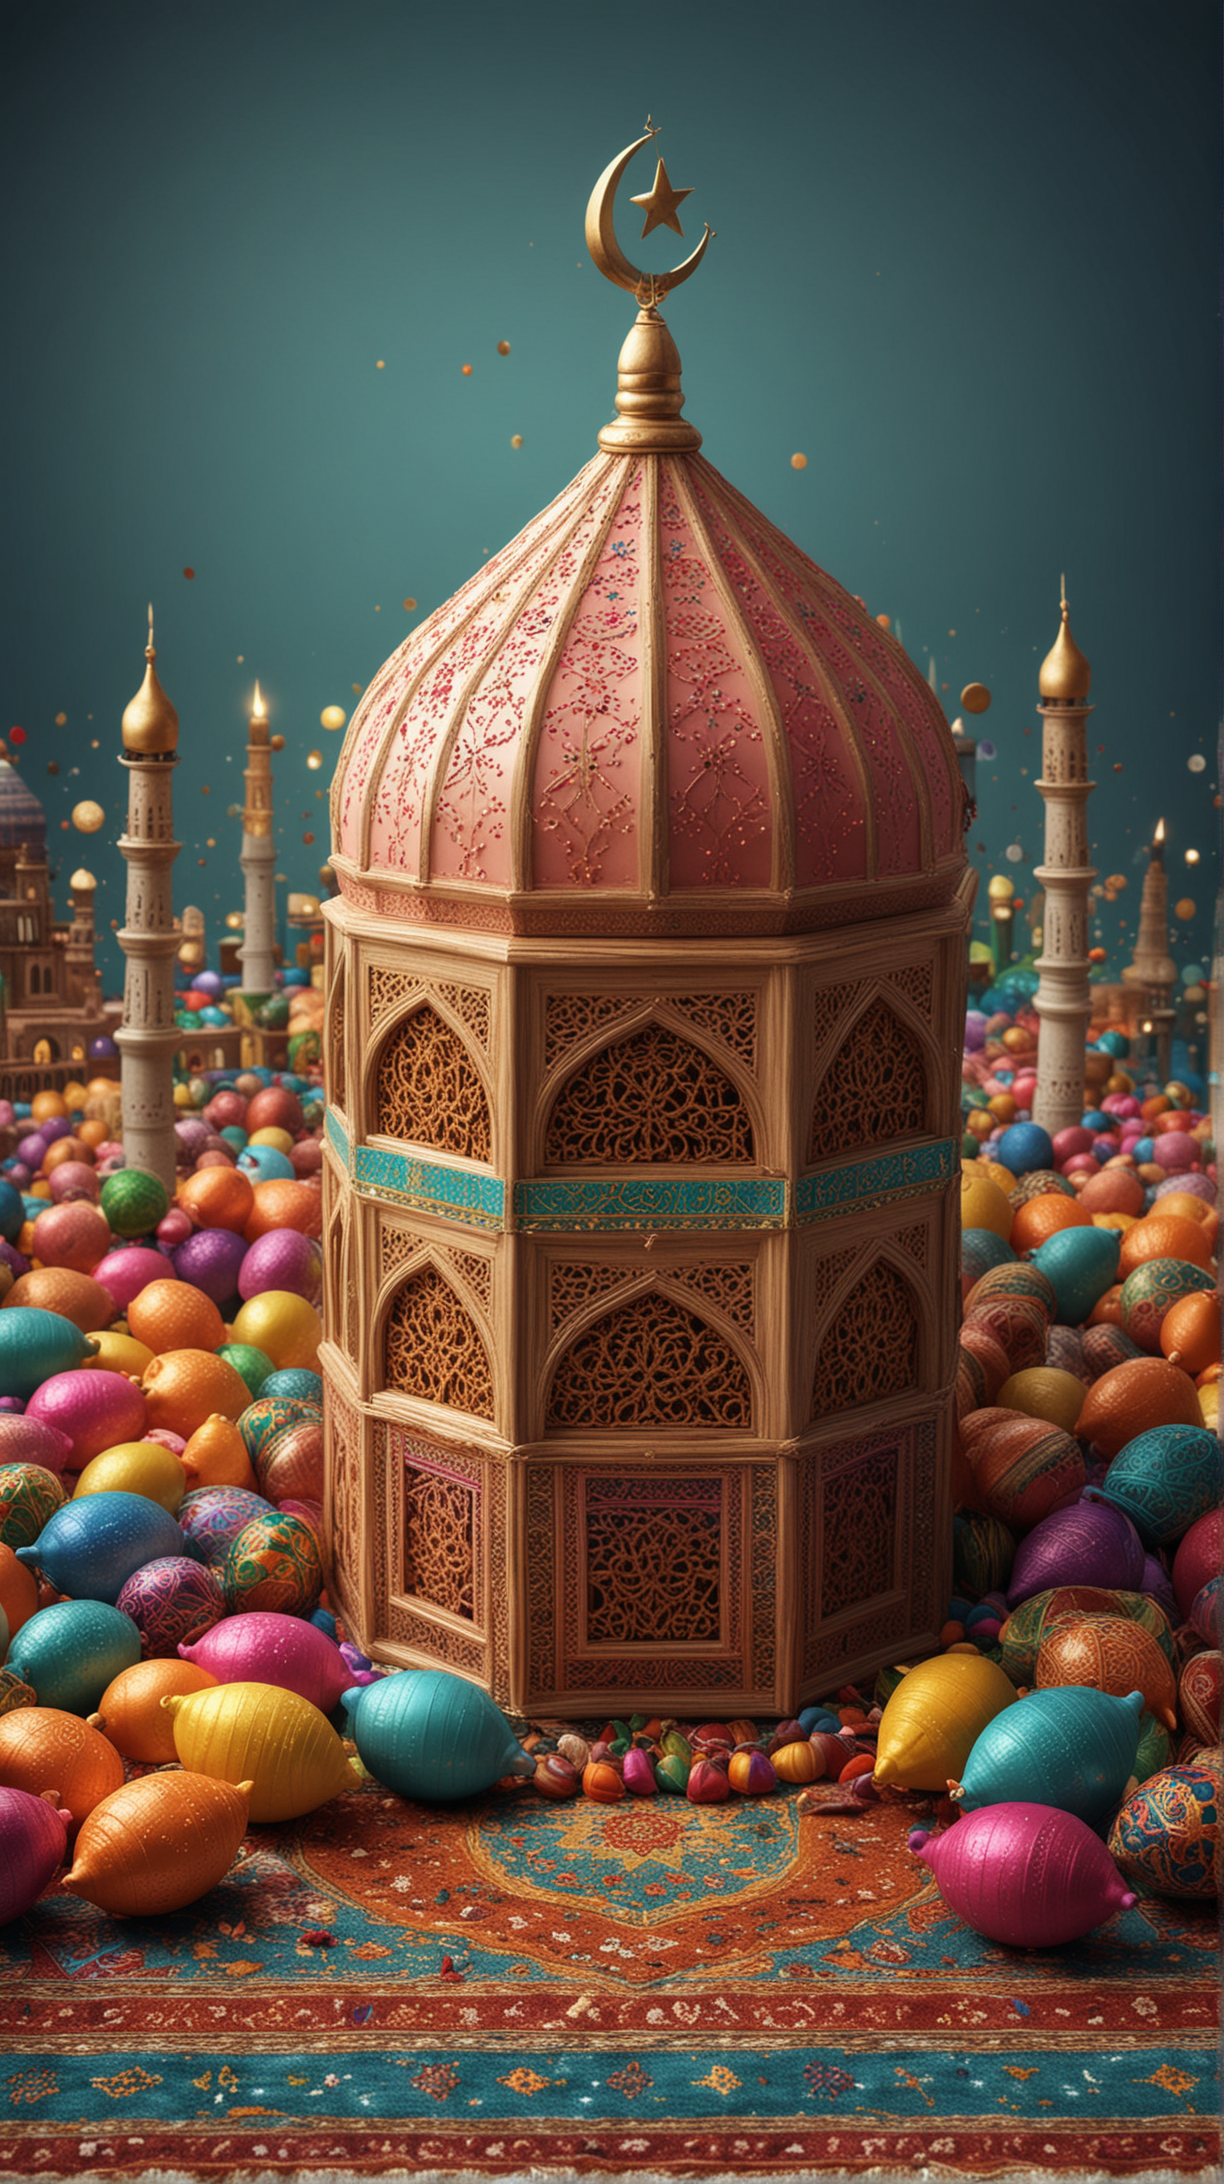 Vibrant Eid Celebration Festive Gatherings and Joyful Expressions of Faith